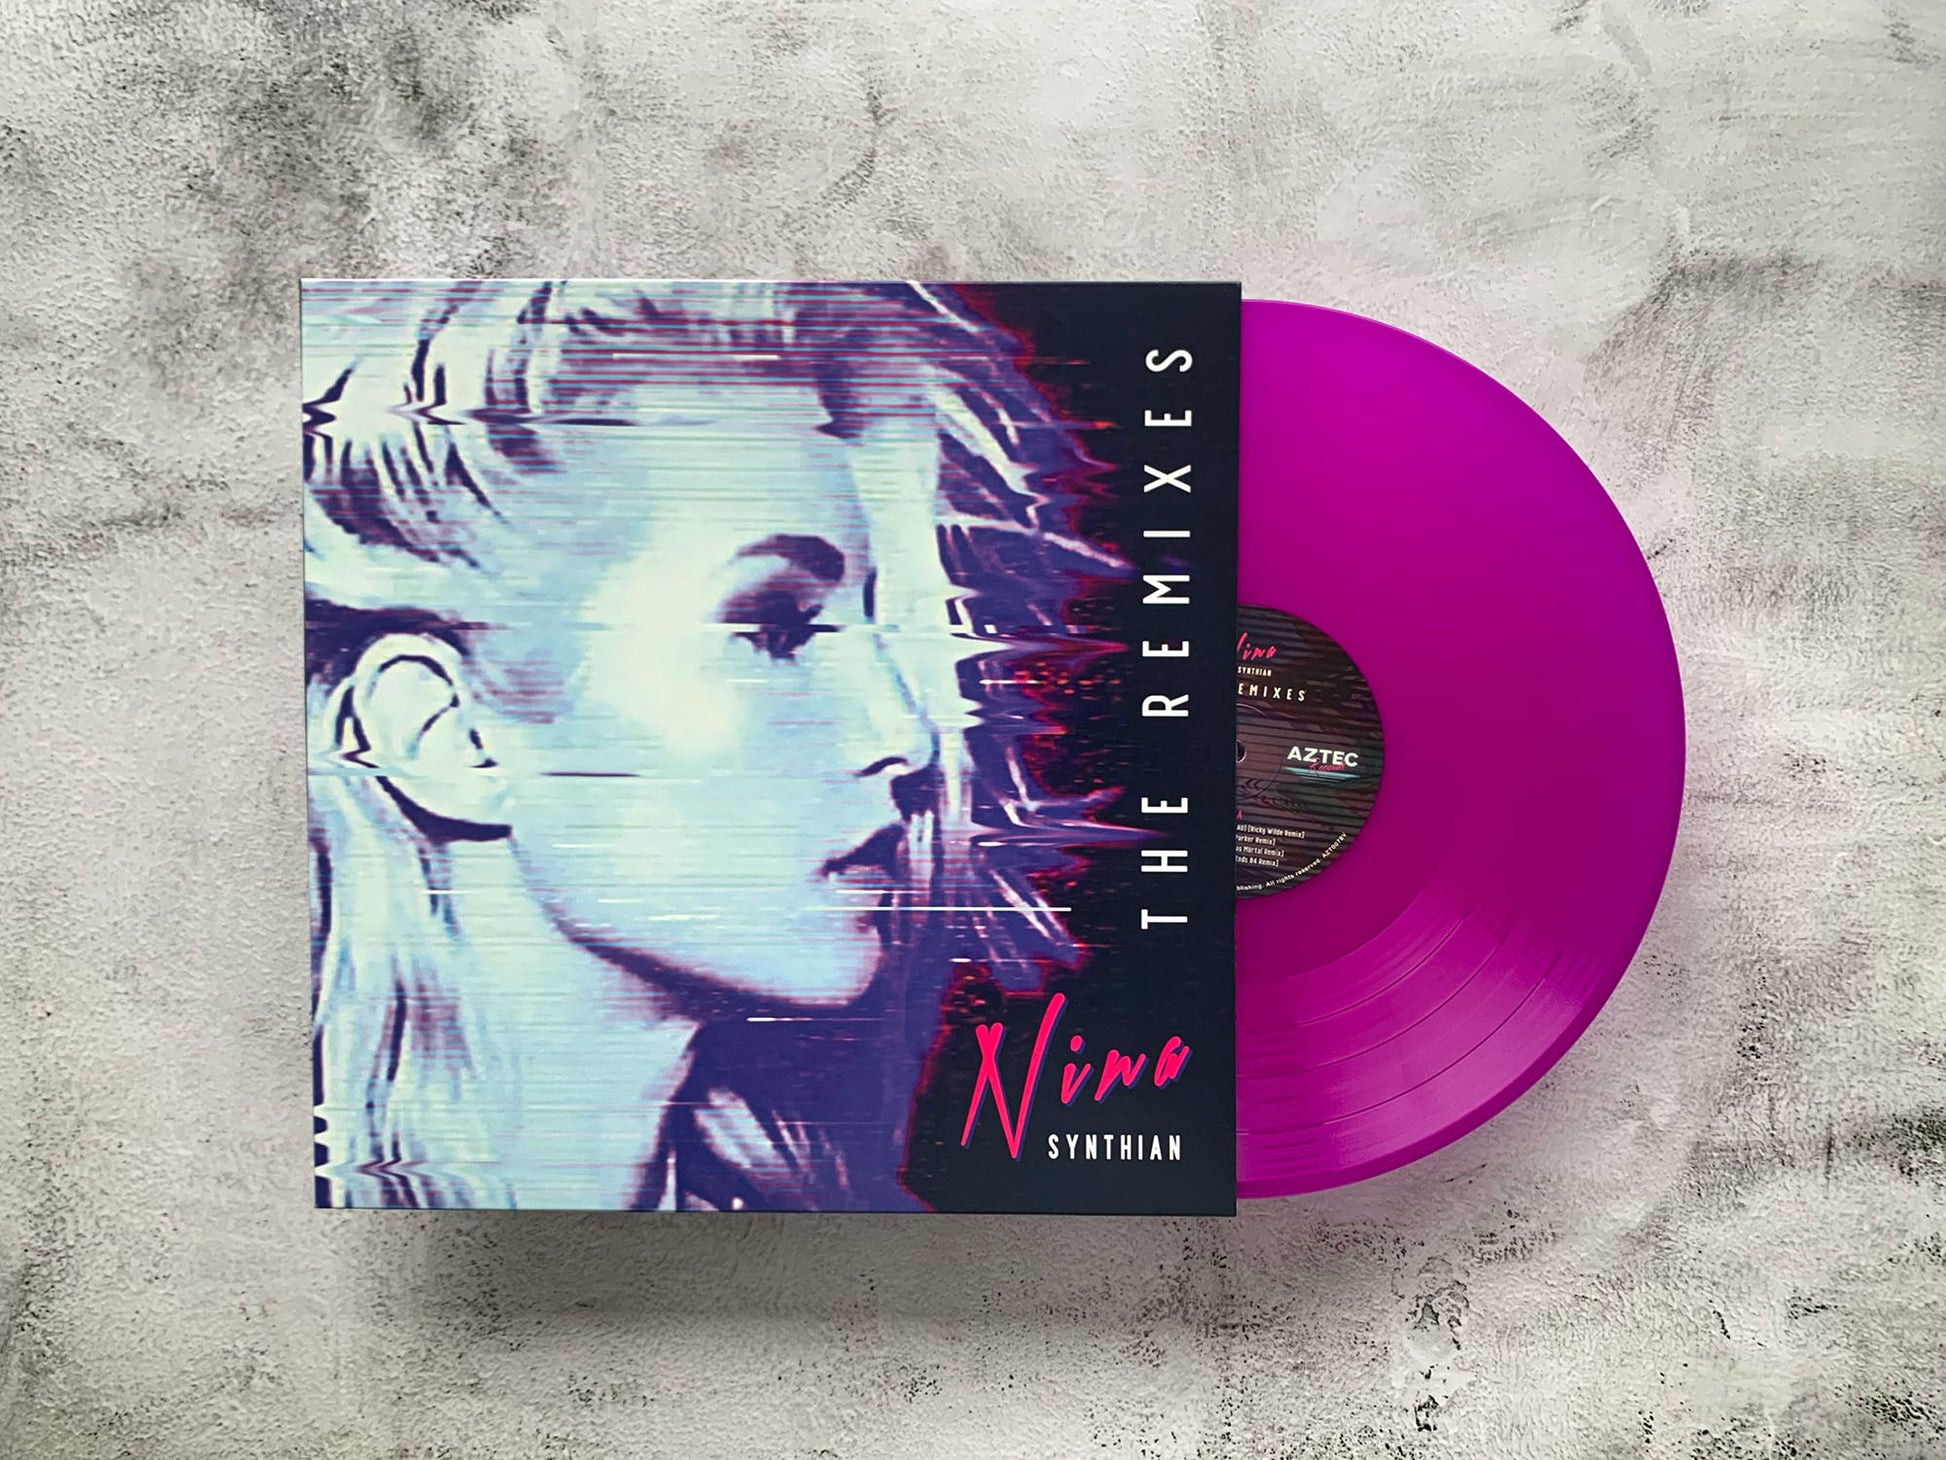 NINA Synthian The Remixes vinyl - Aztec Records artist